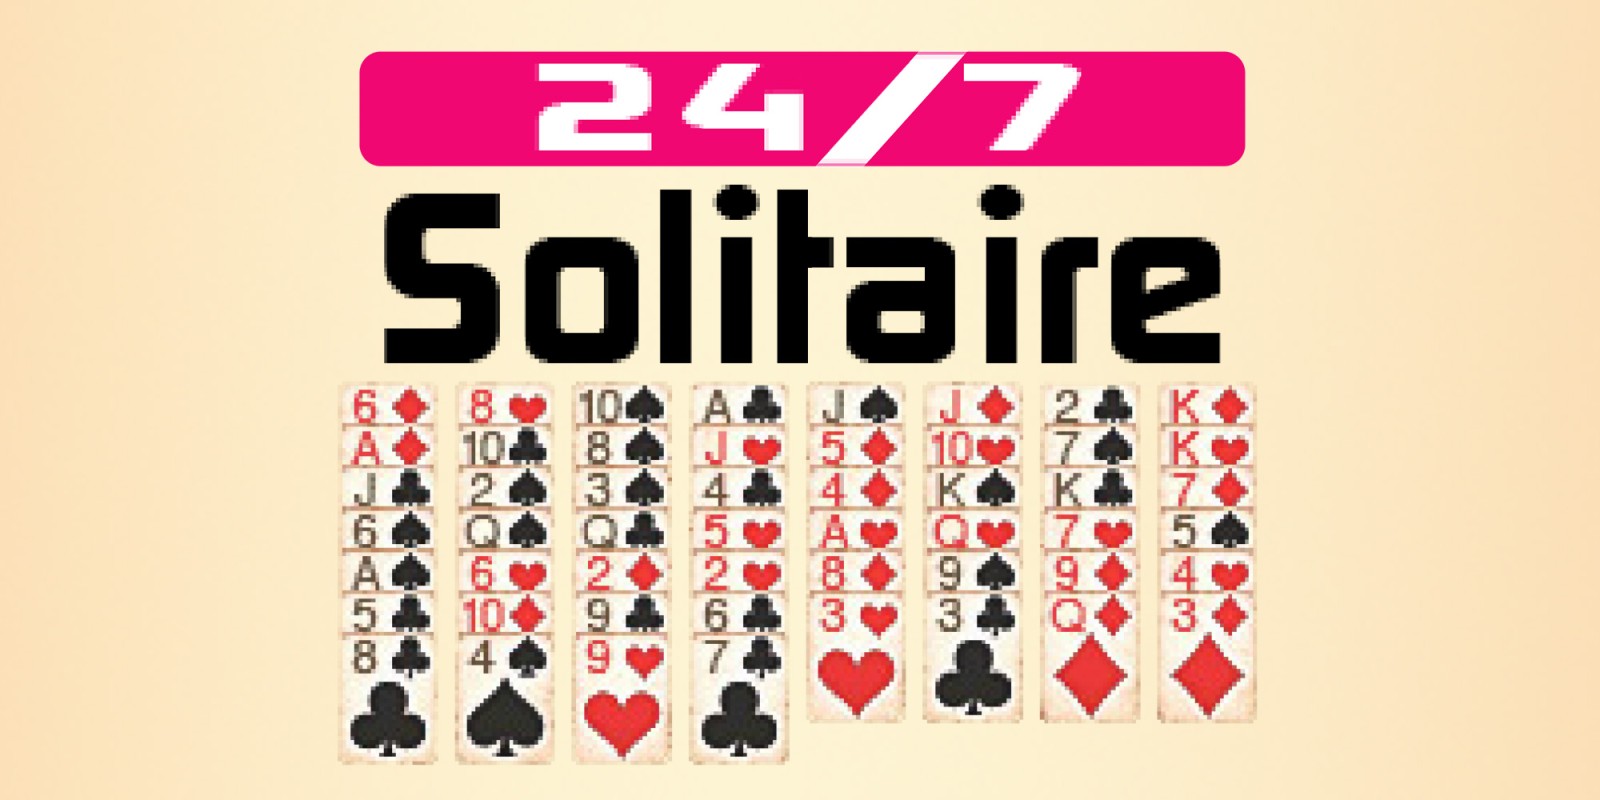 24 7 solitaire yukon